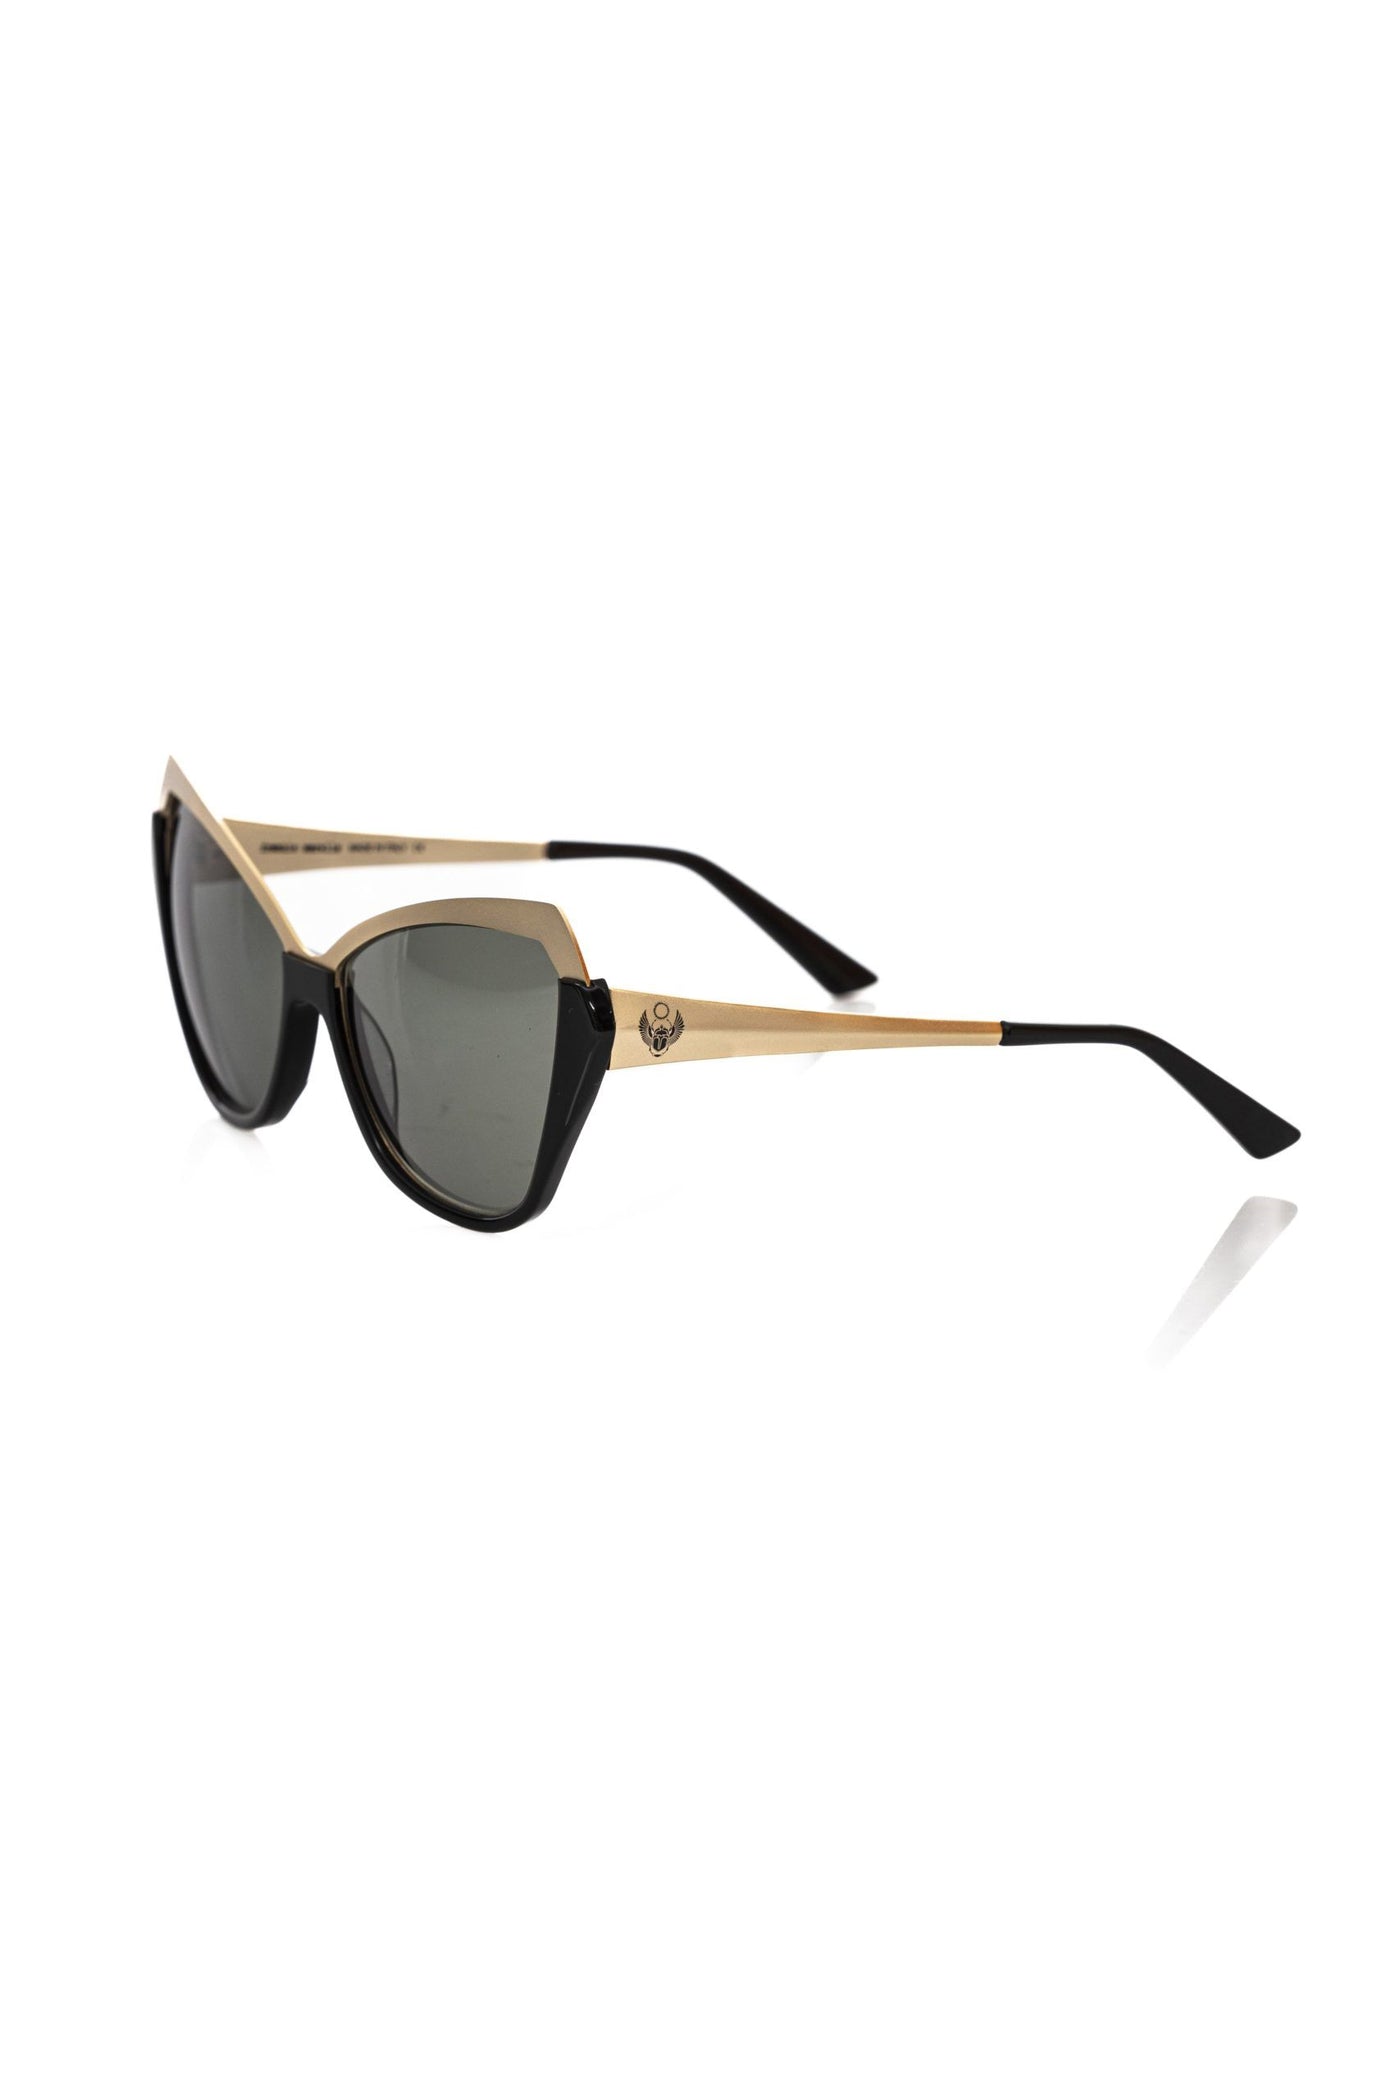 Frankie Morello Black Acetate Sunglasses